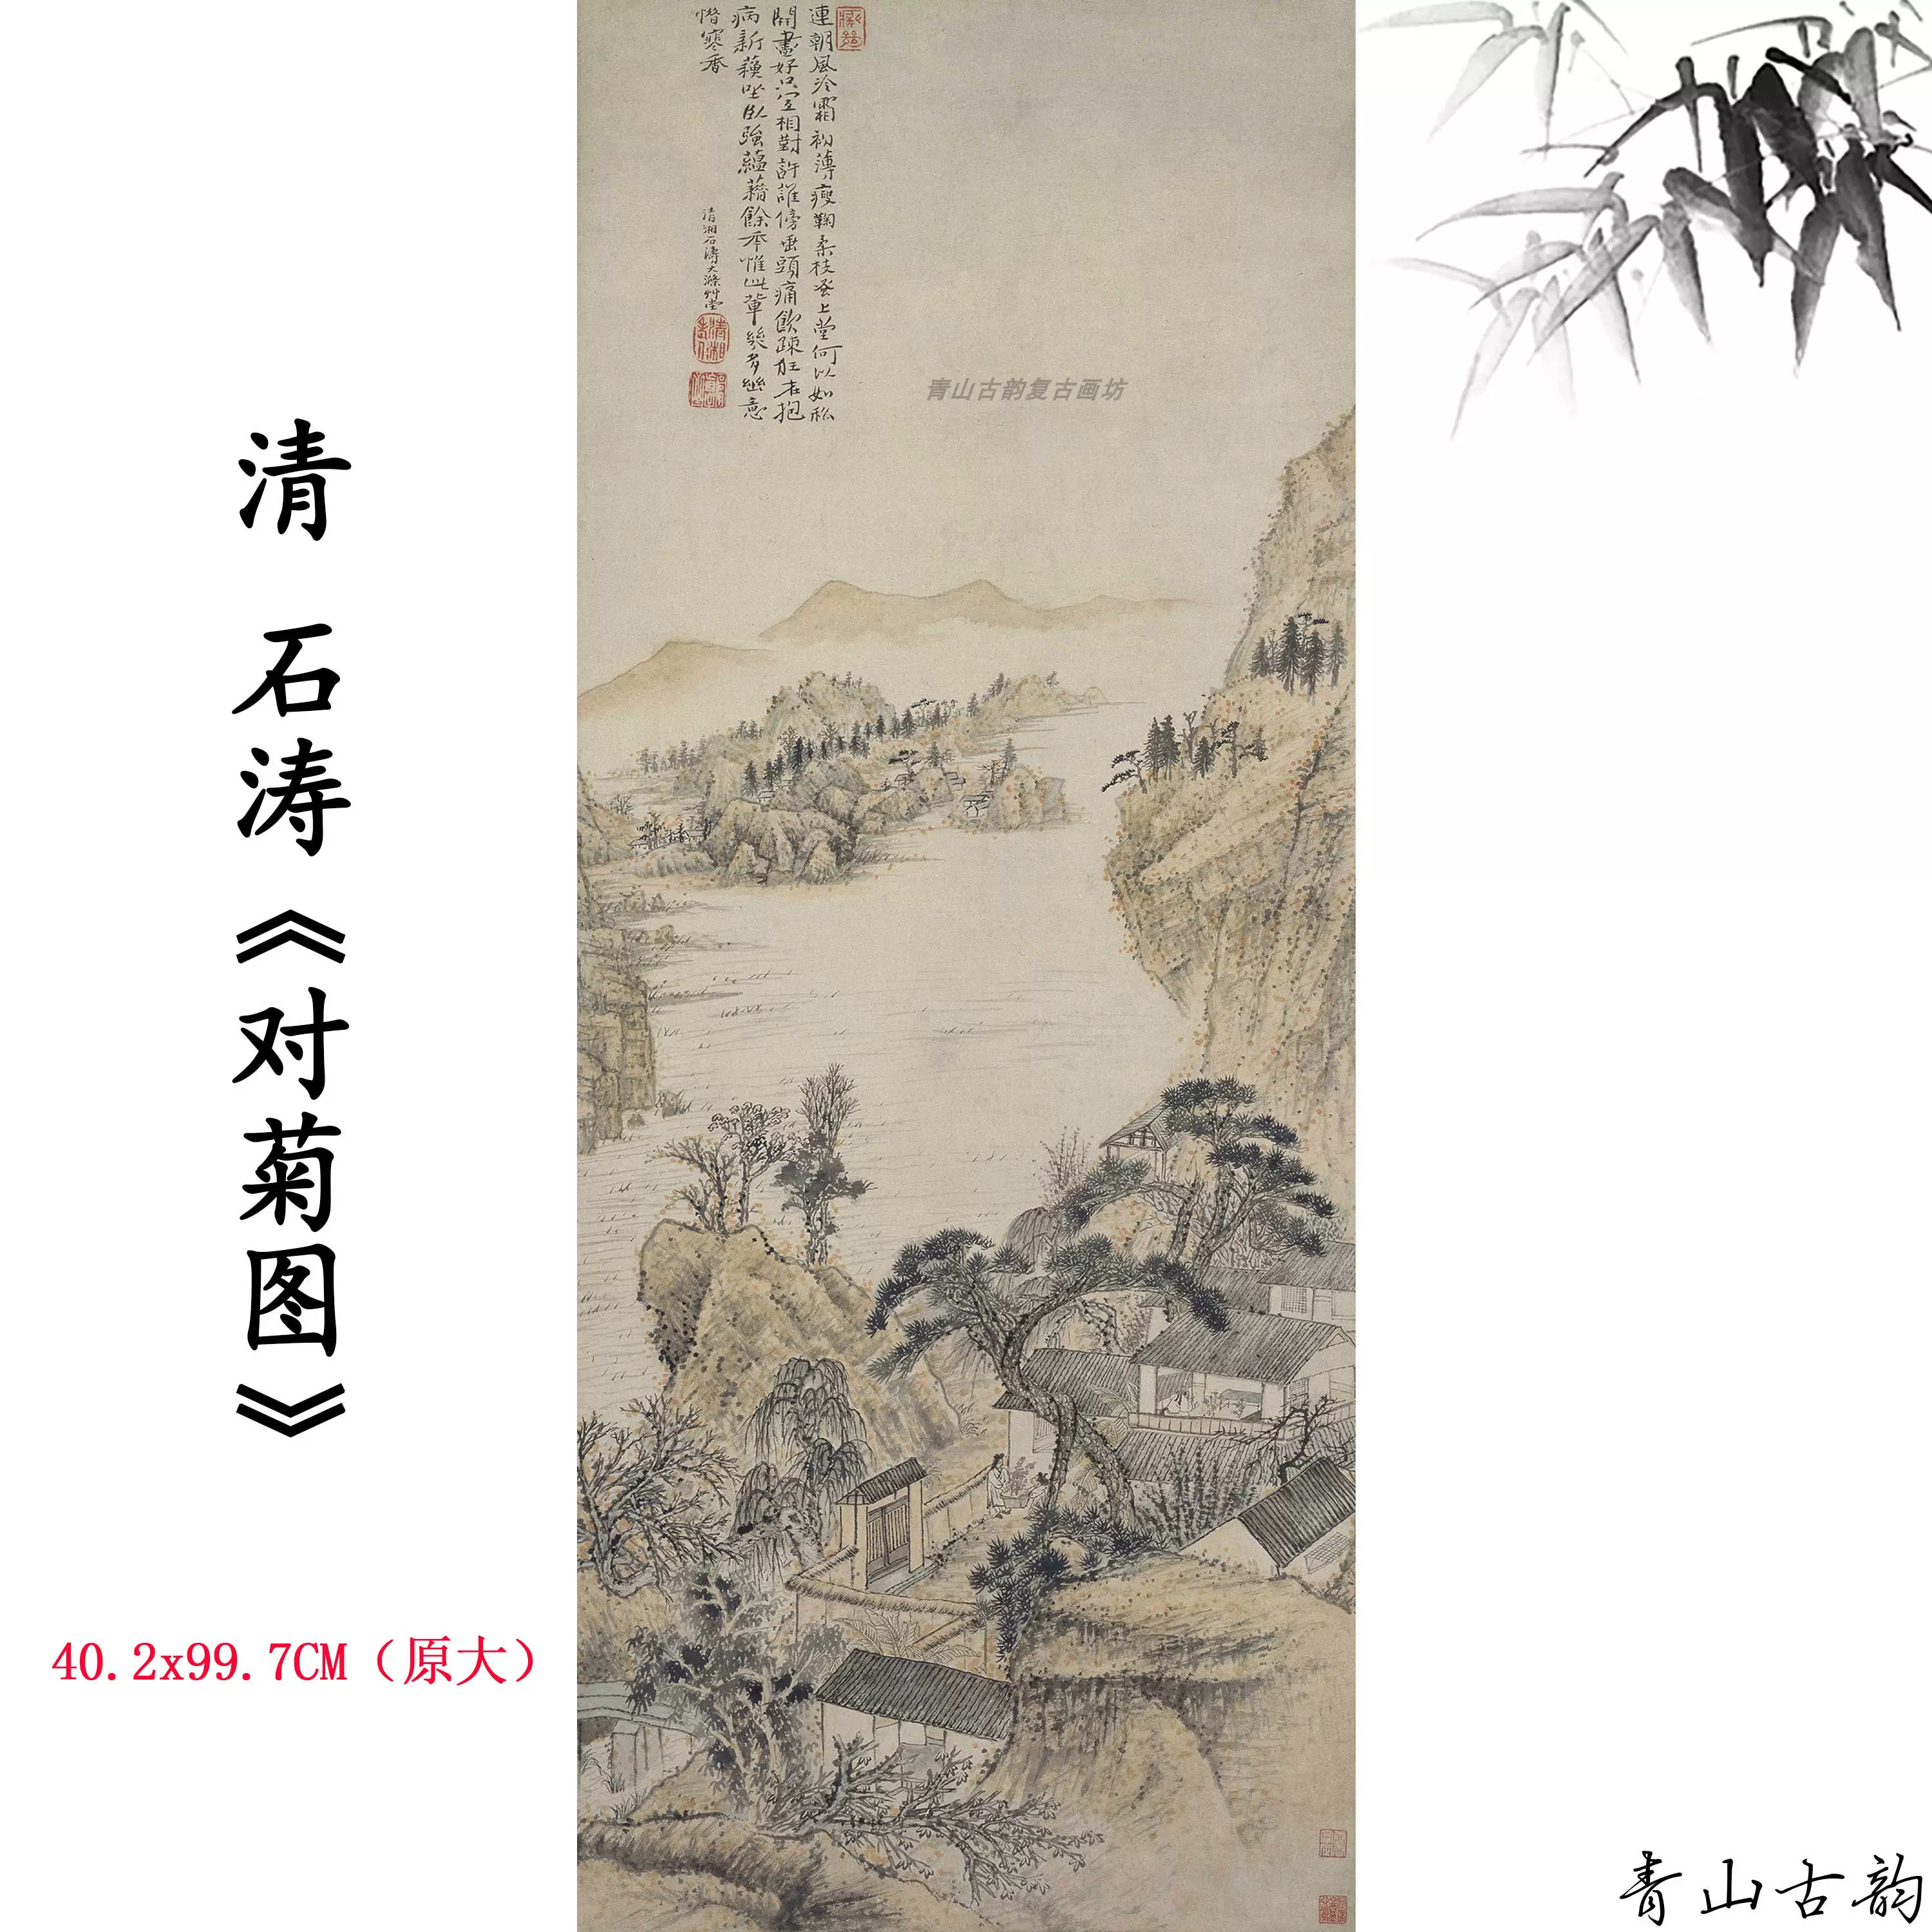 1:1清石濤對菊圖軸立軸掛畫國畫山水畫裝飾畫微噴複製臨摹範本-Taobao